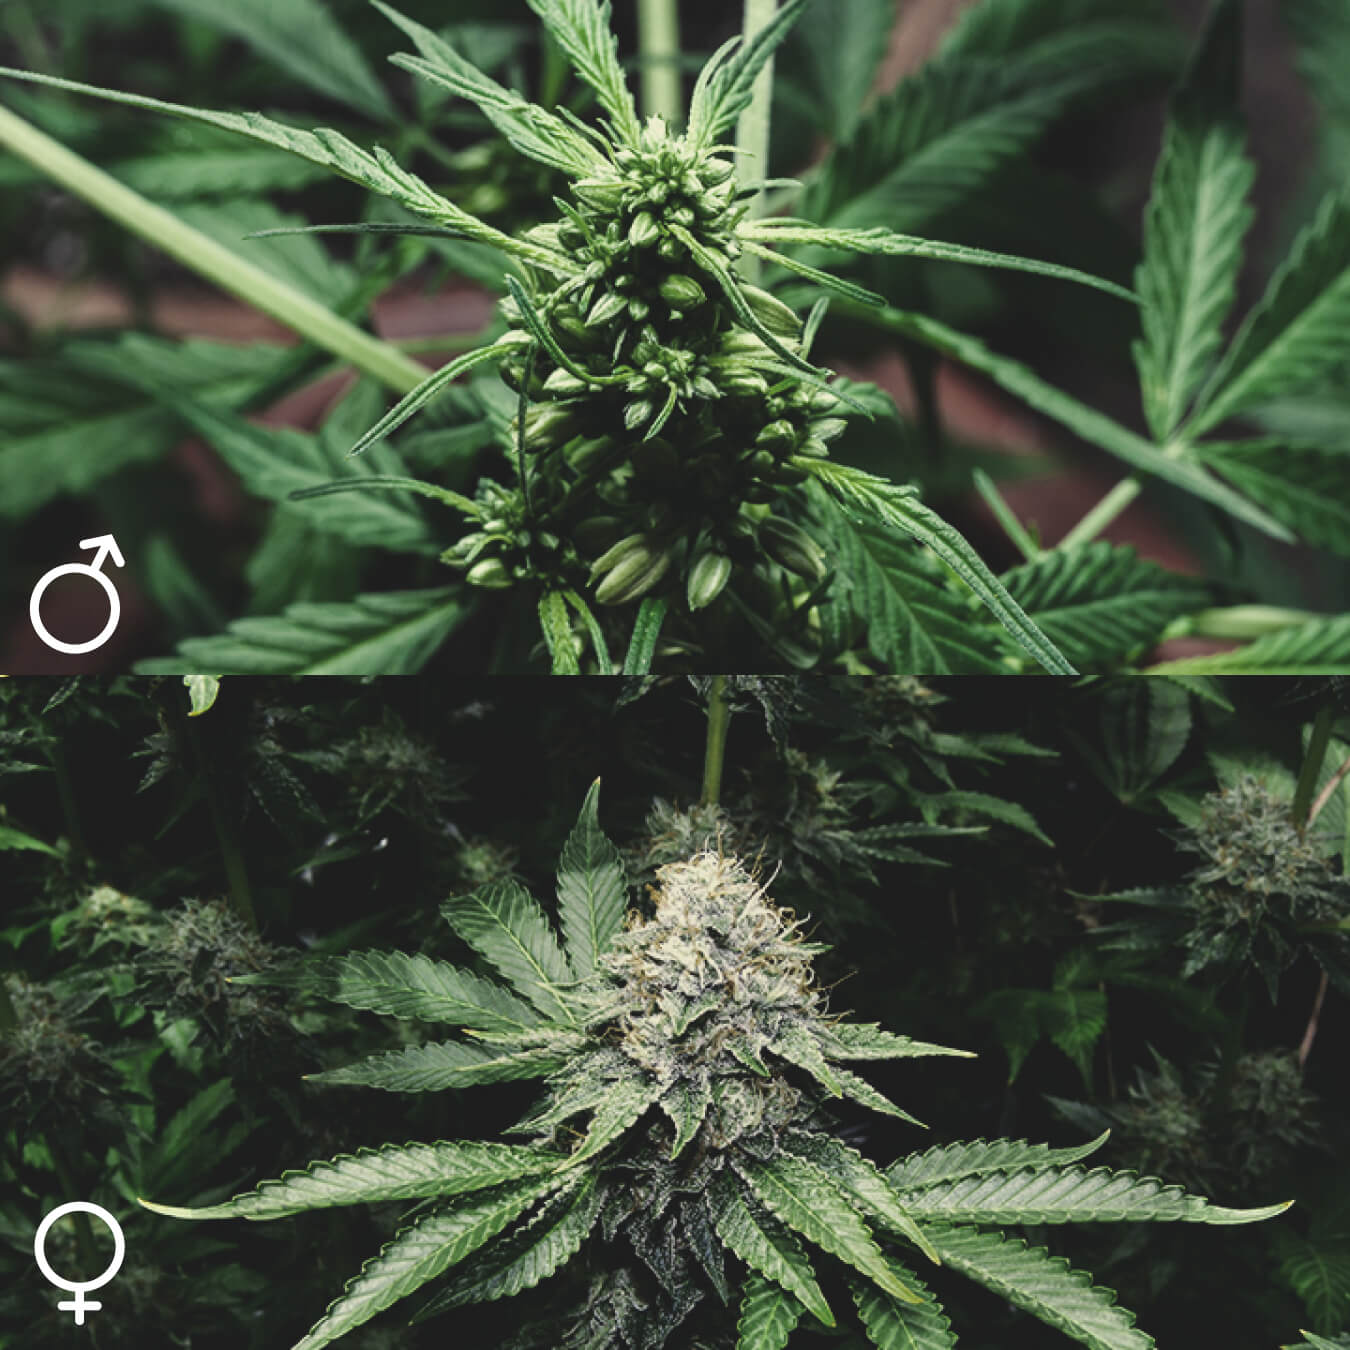 Totes les plantes de marihuana són iguals?